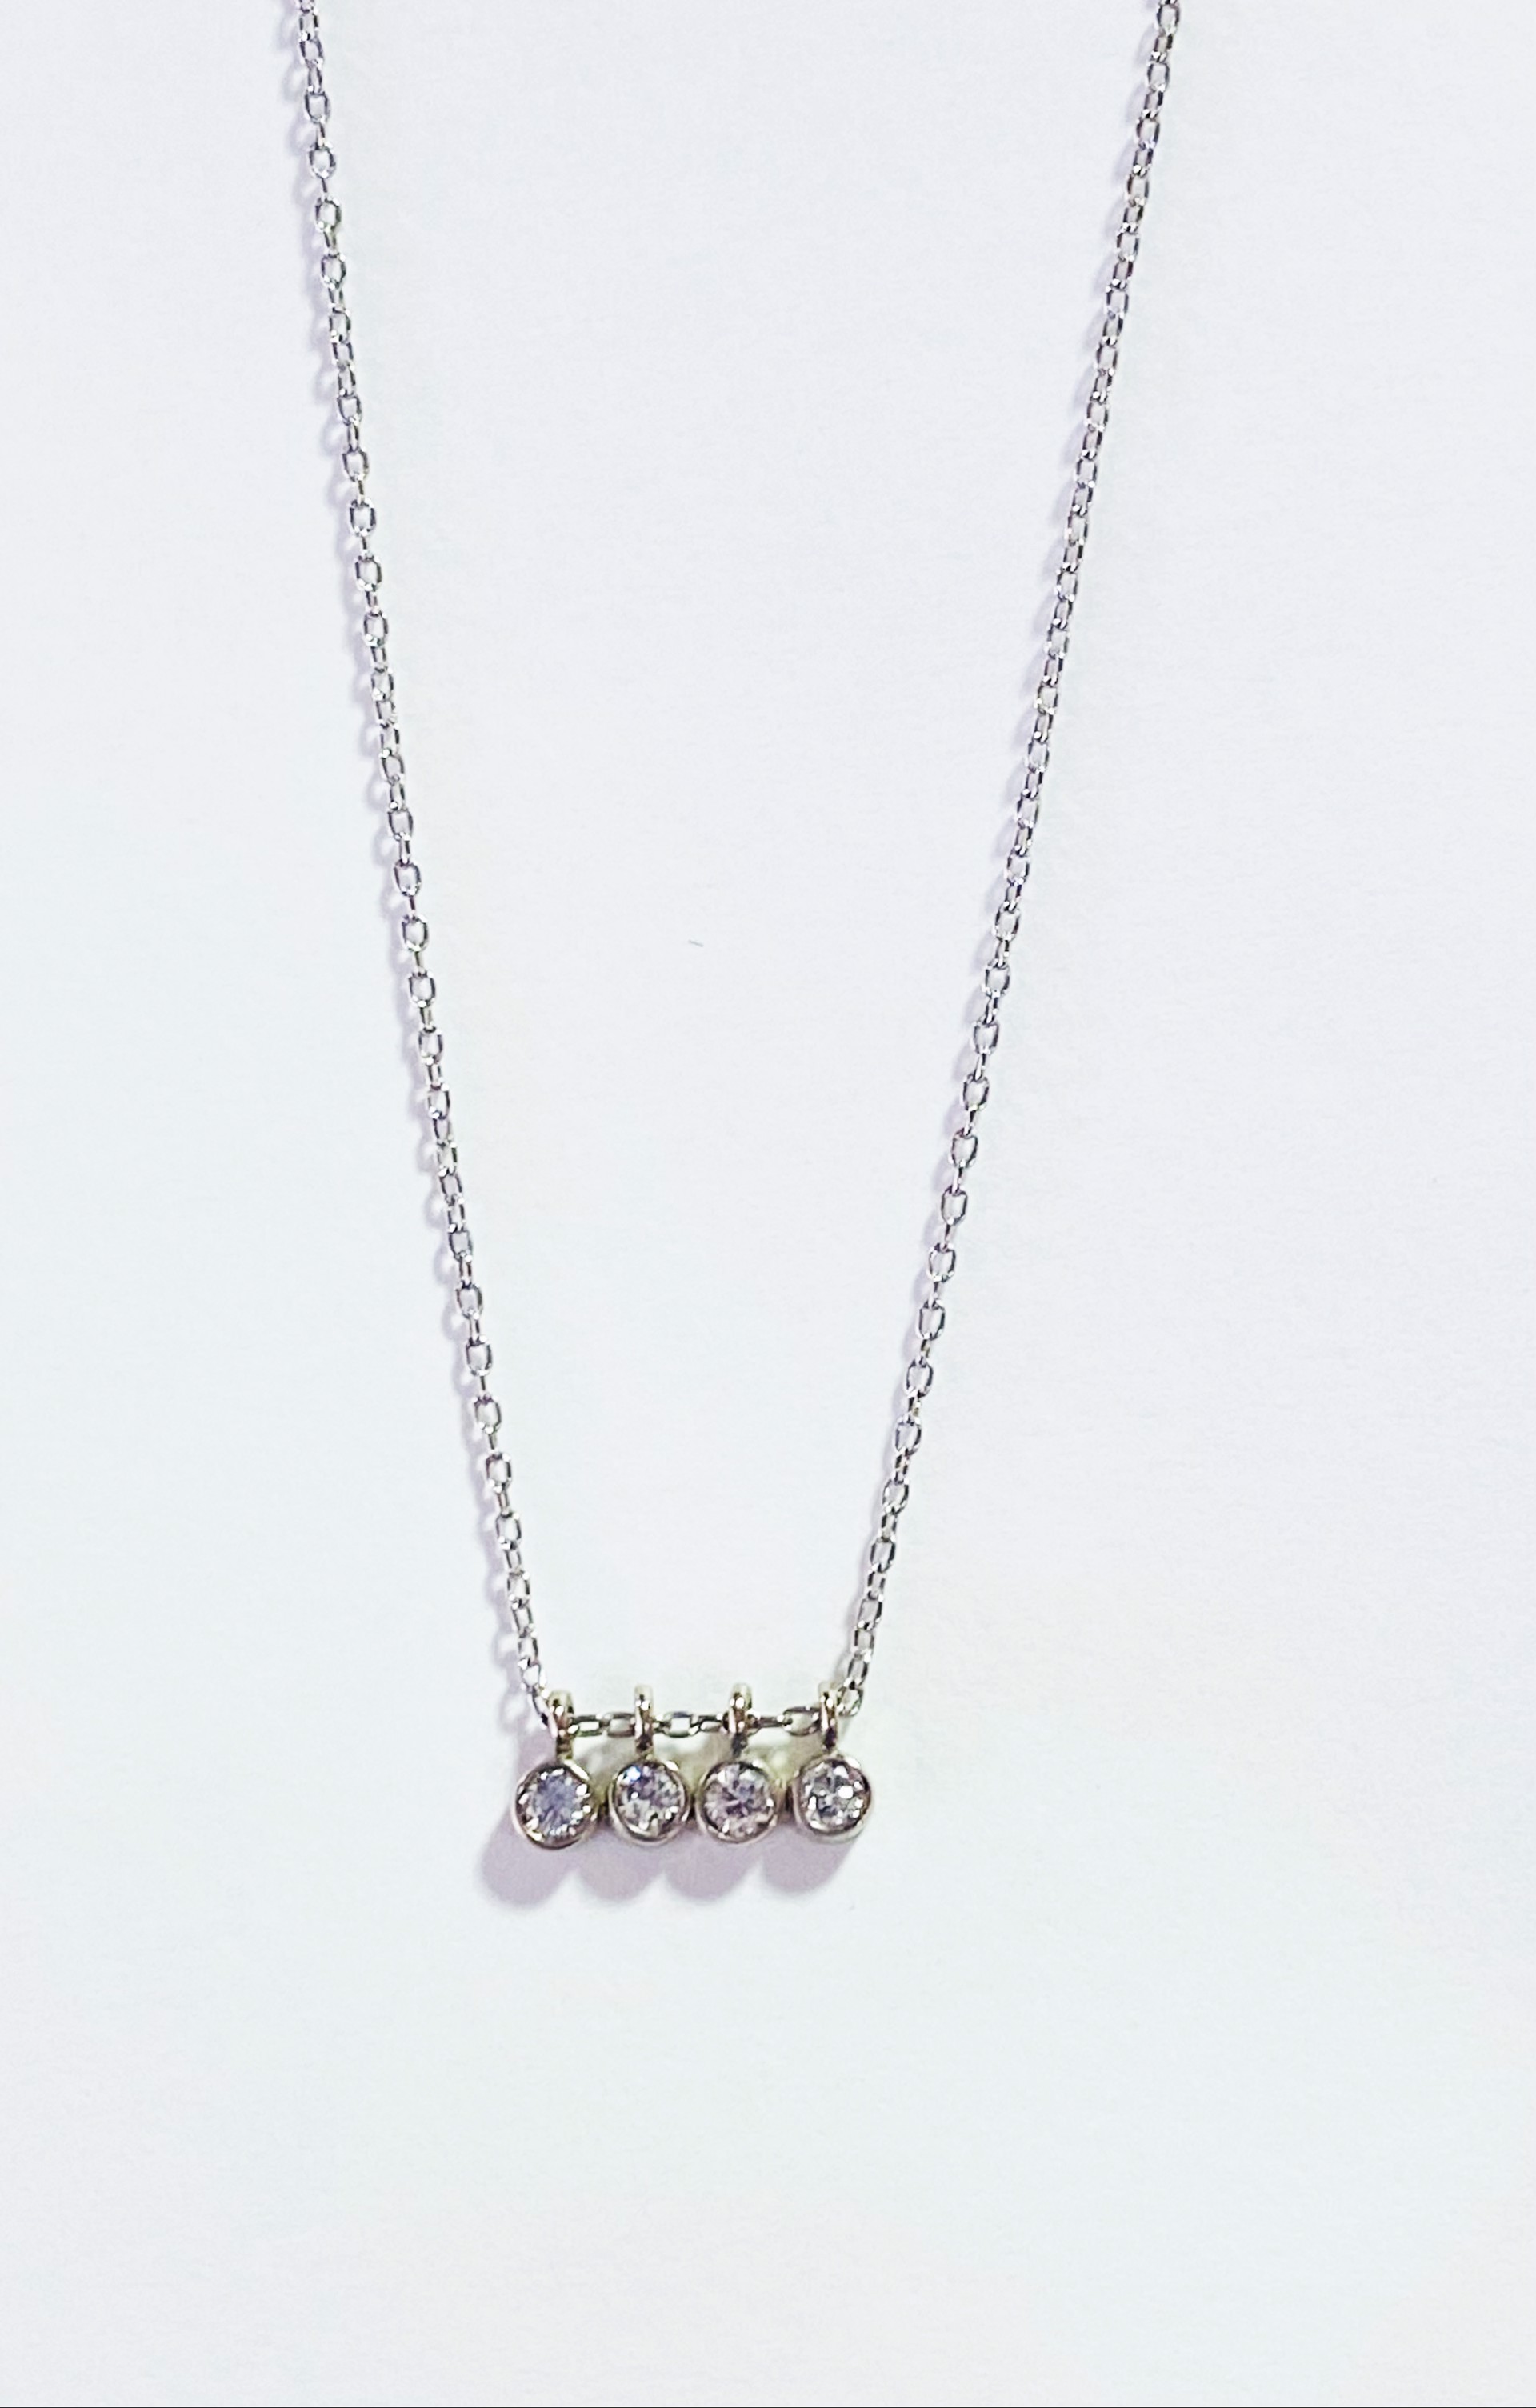 Petite Diamond Necklace by D'ETTE DELFORGE